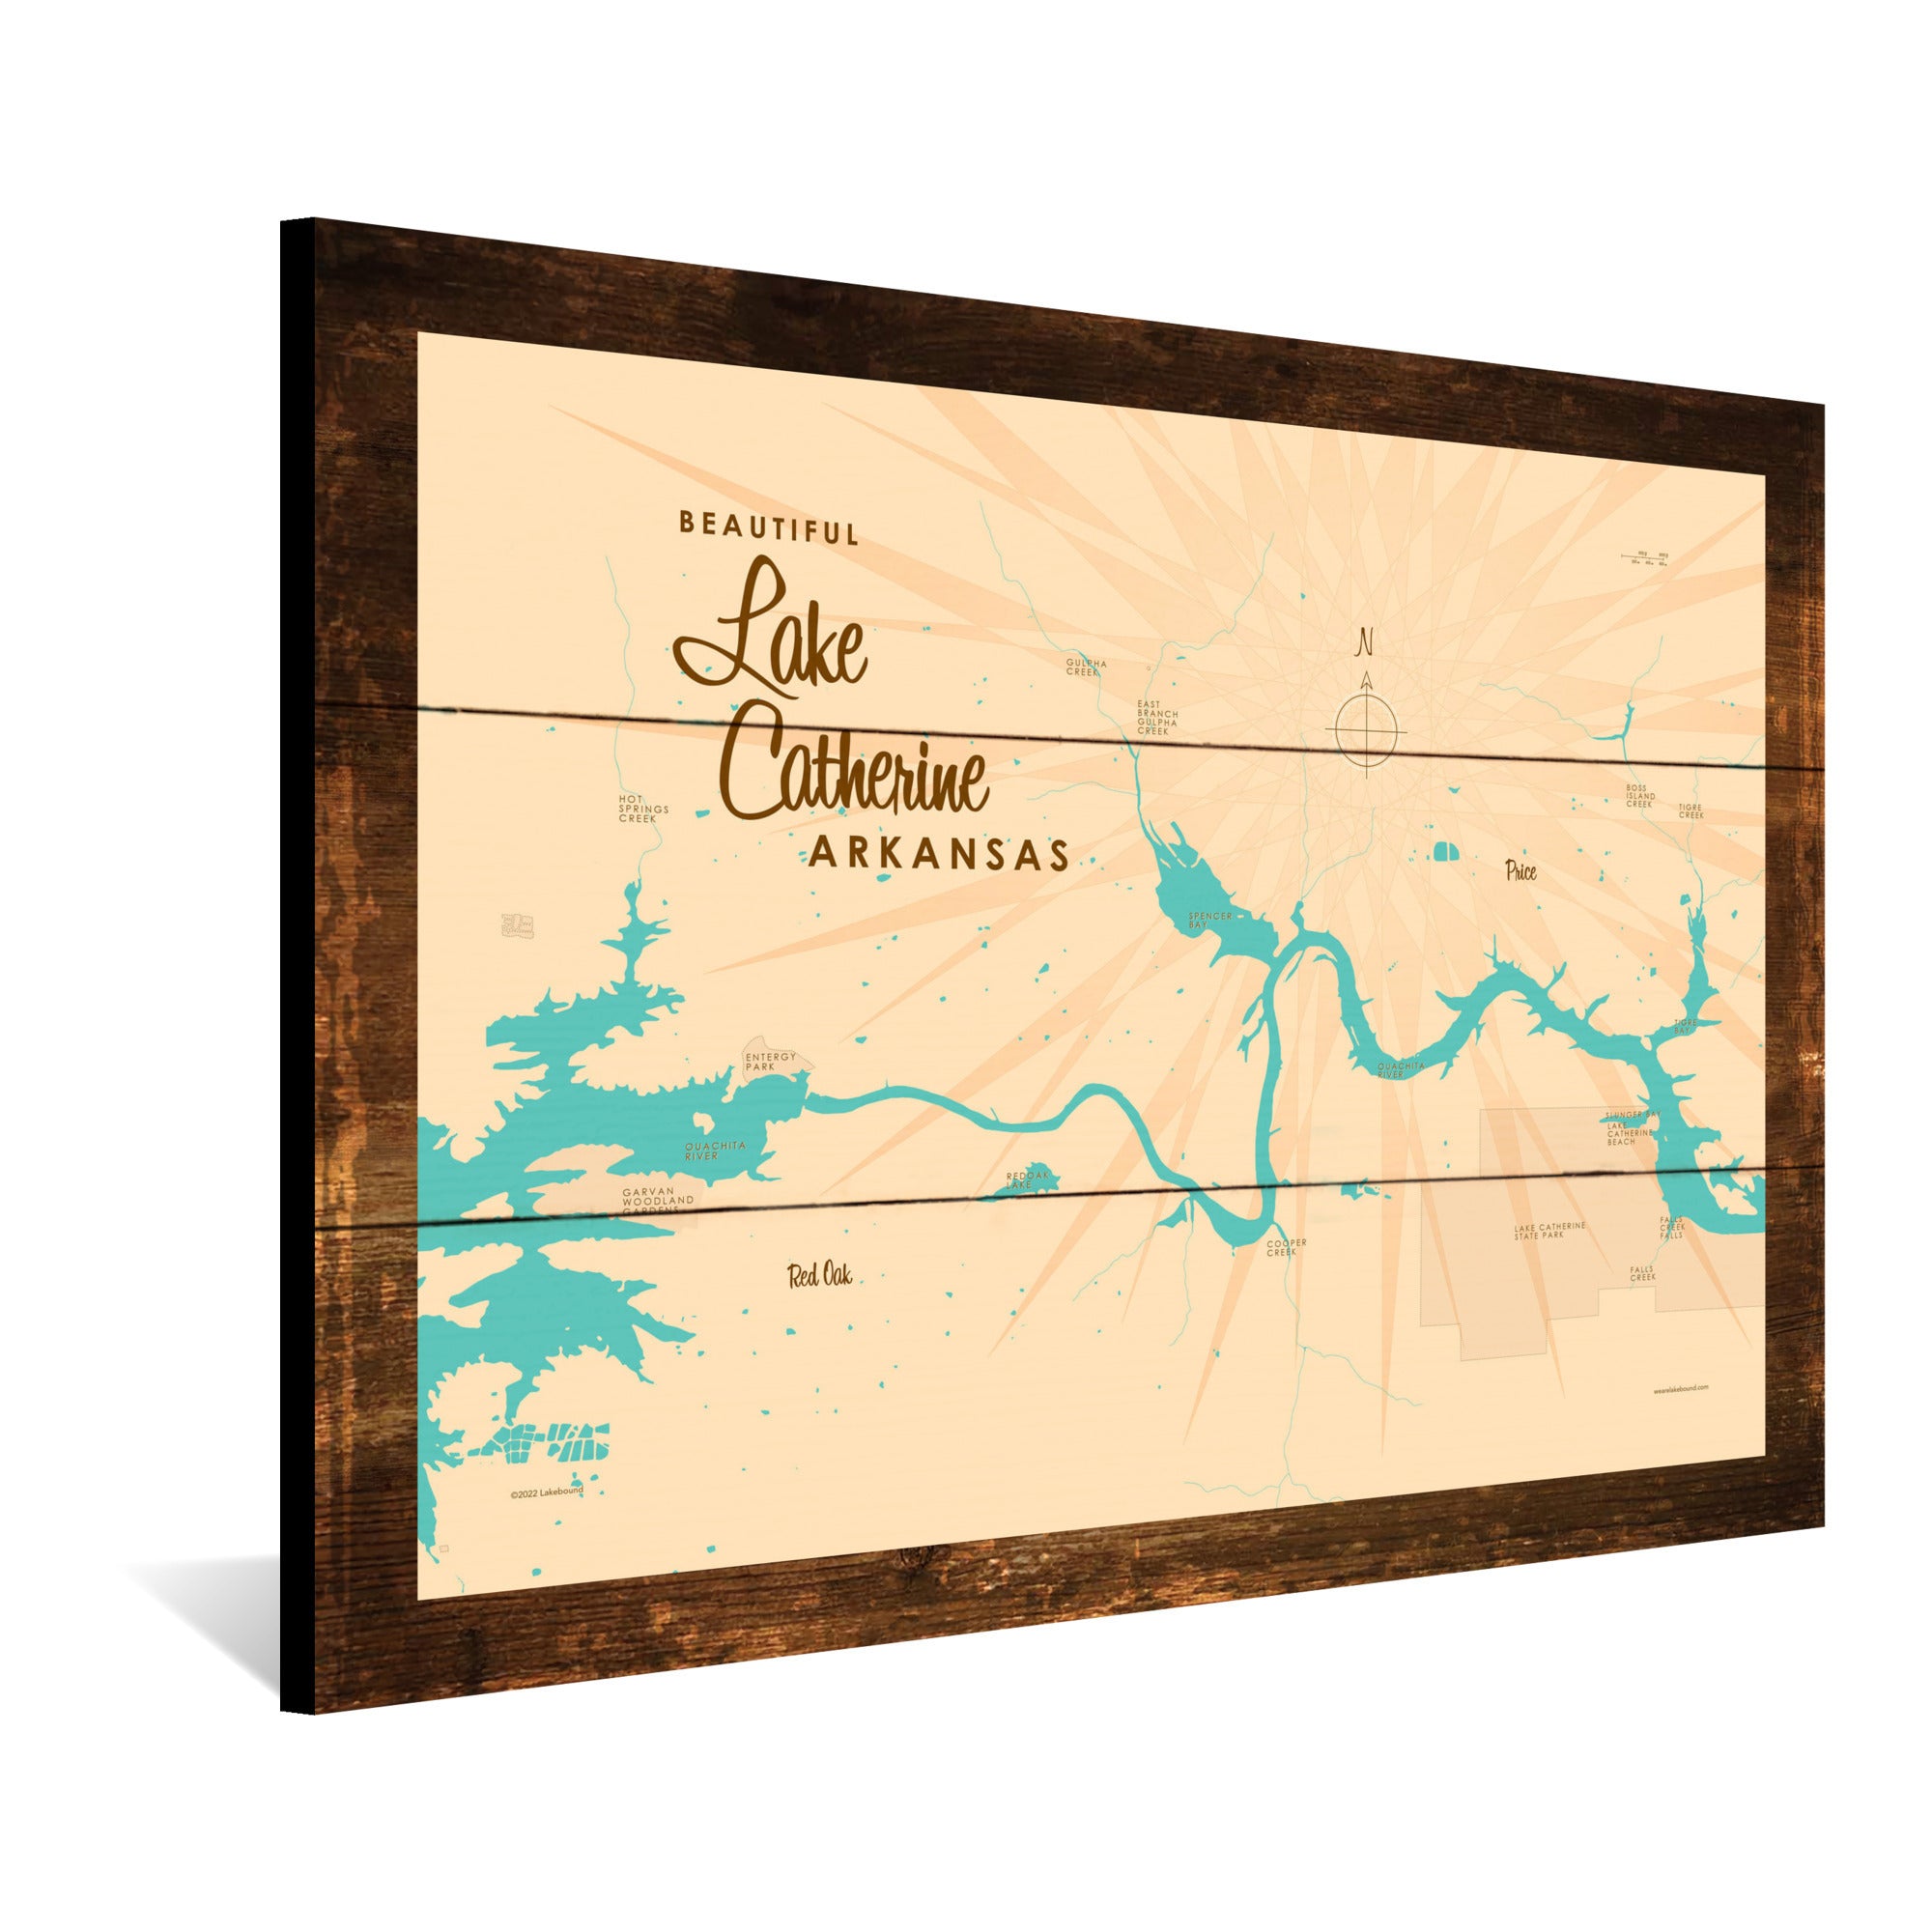 Lake Catherine Arkansas, Rustic Wood Sign Map Art